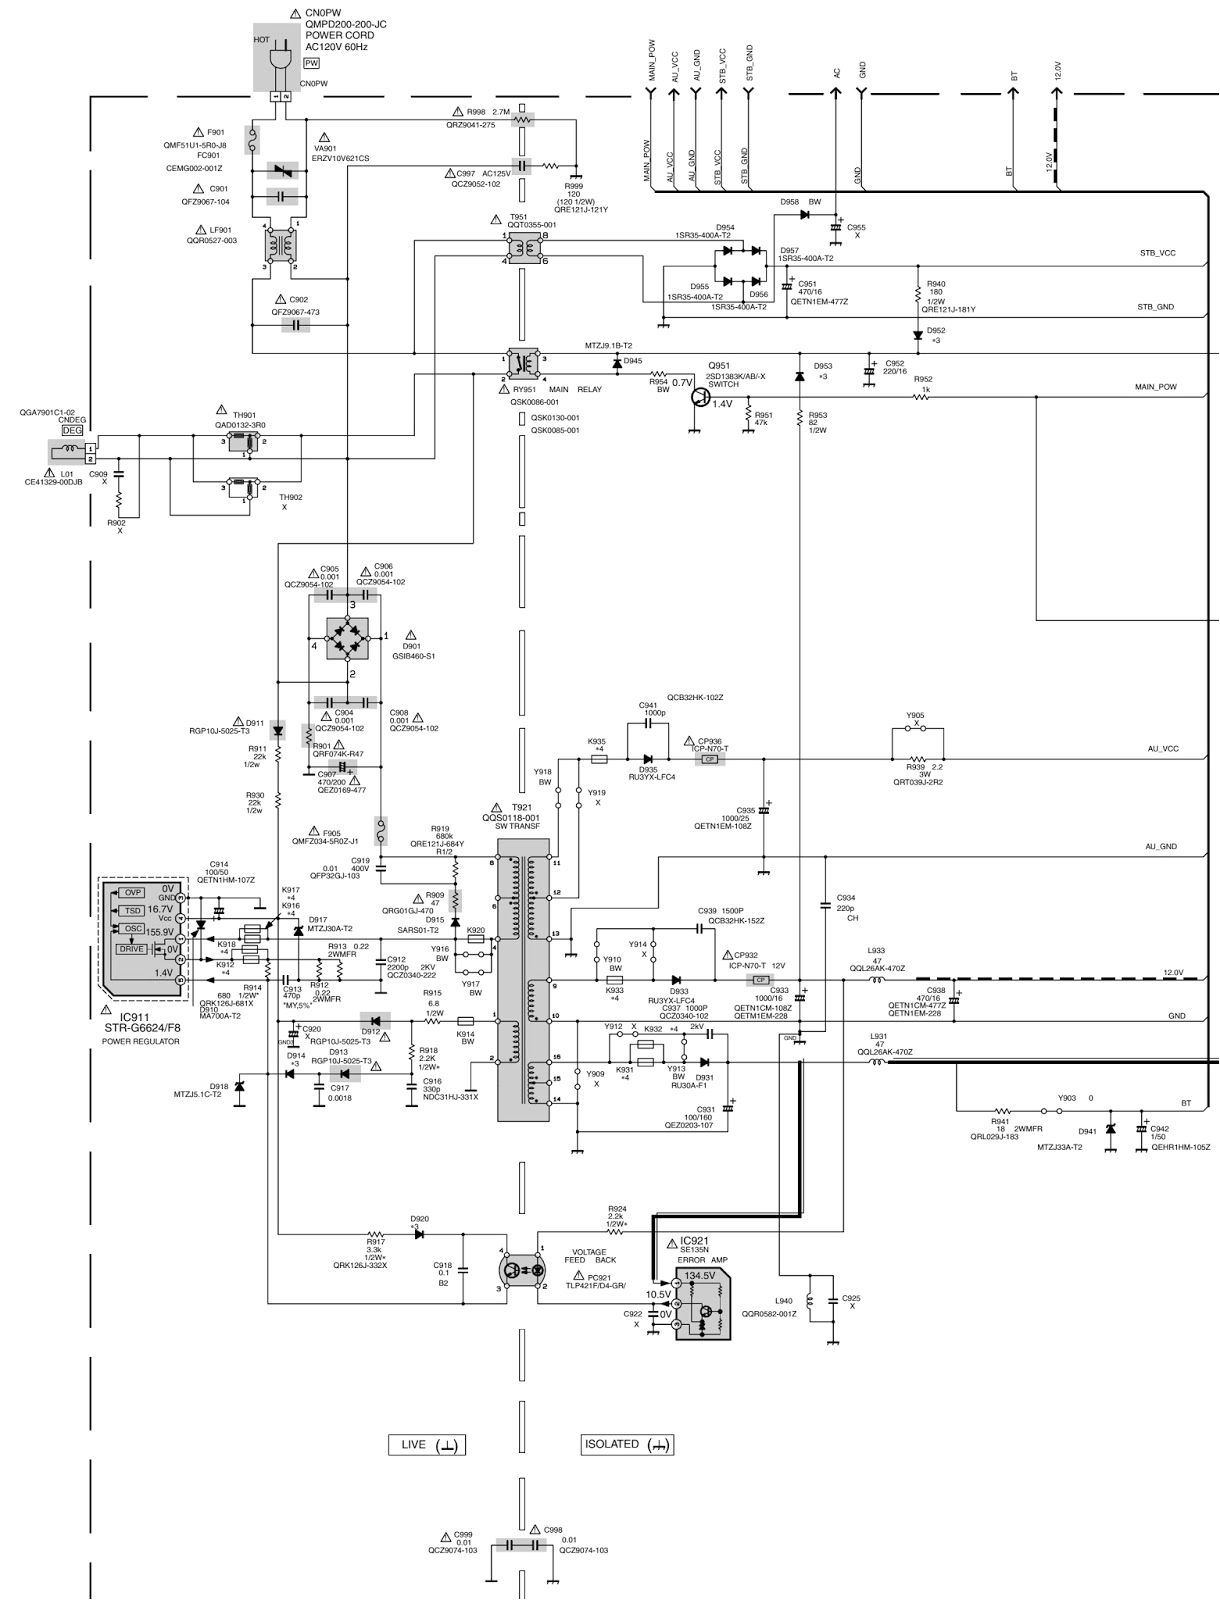 fbp 1 40x wiring diagram wiring diagram fbp 1 40x wiring diagram